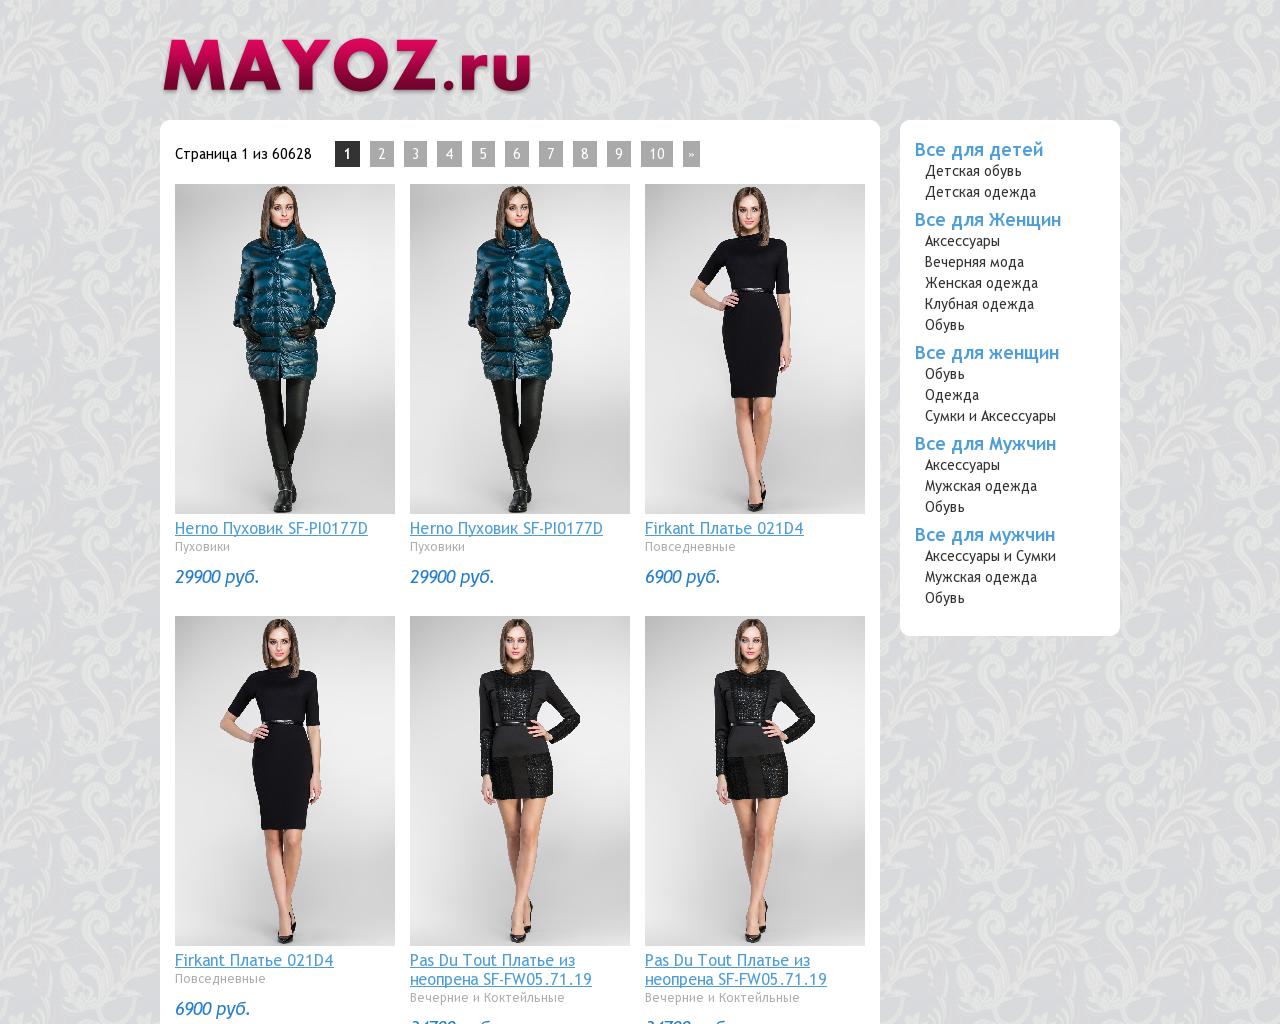 Изображение сайта mayoz.ru в разрешении 1280x1024